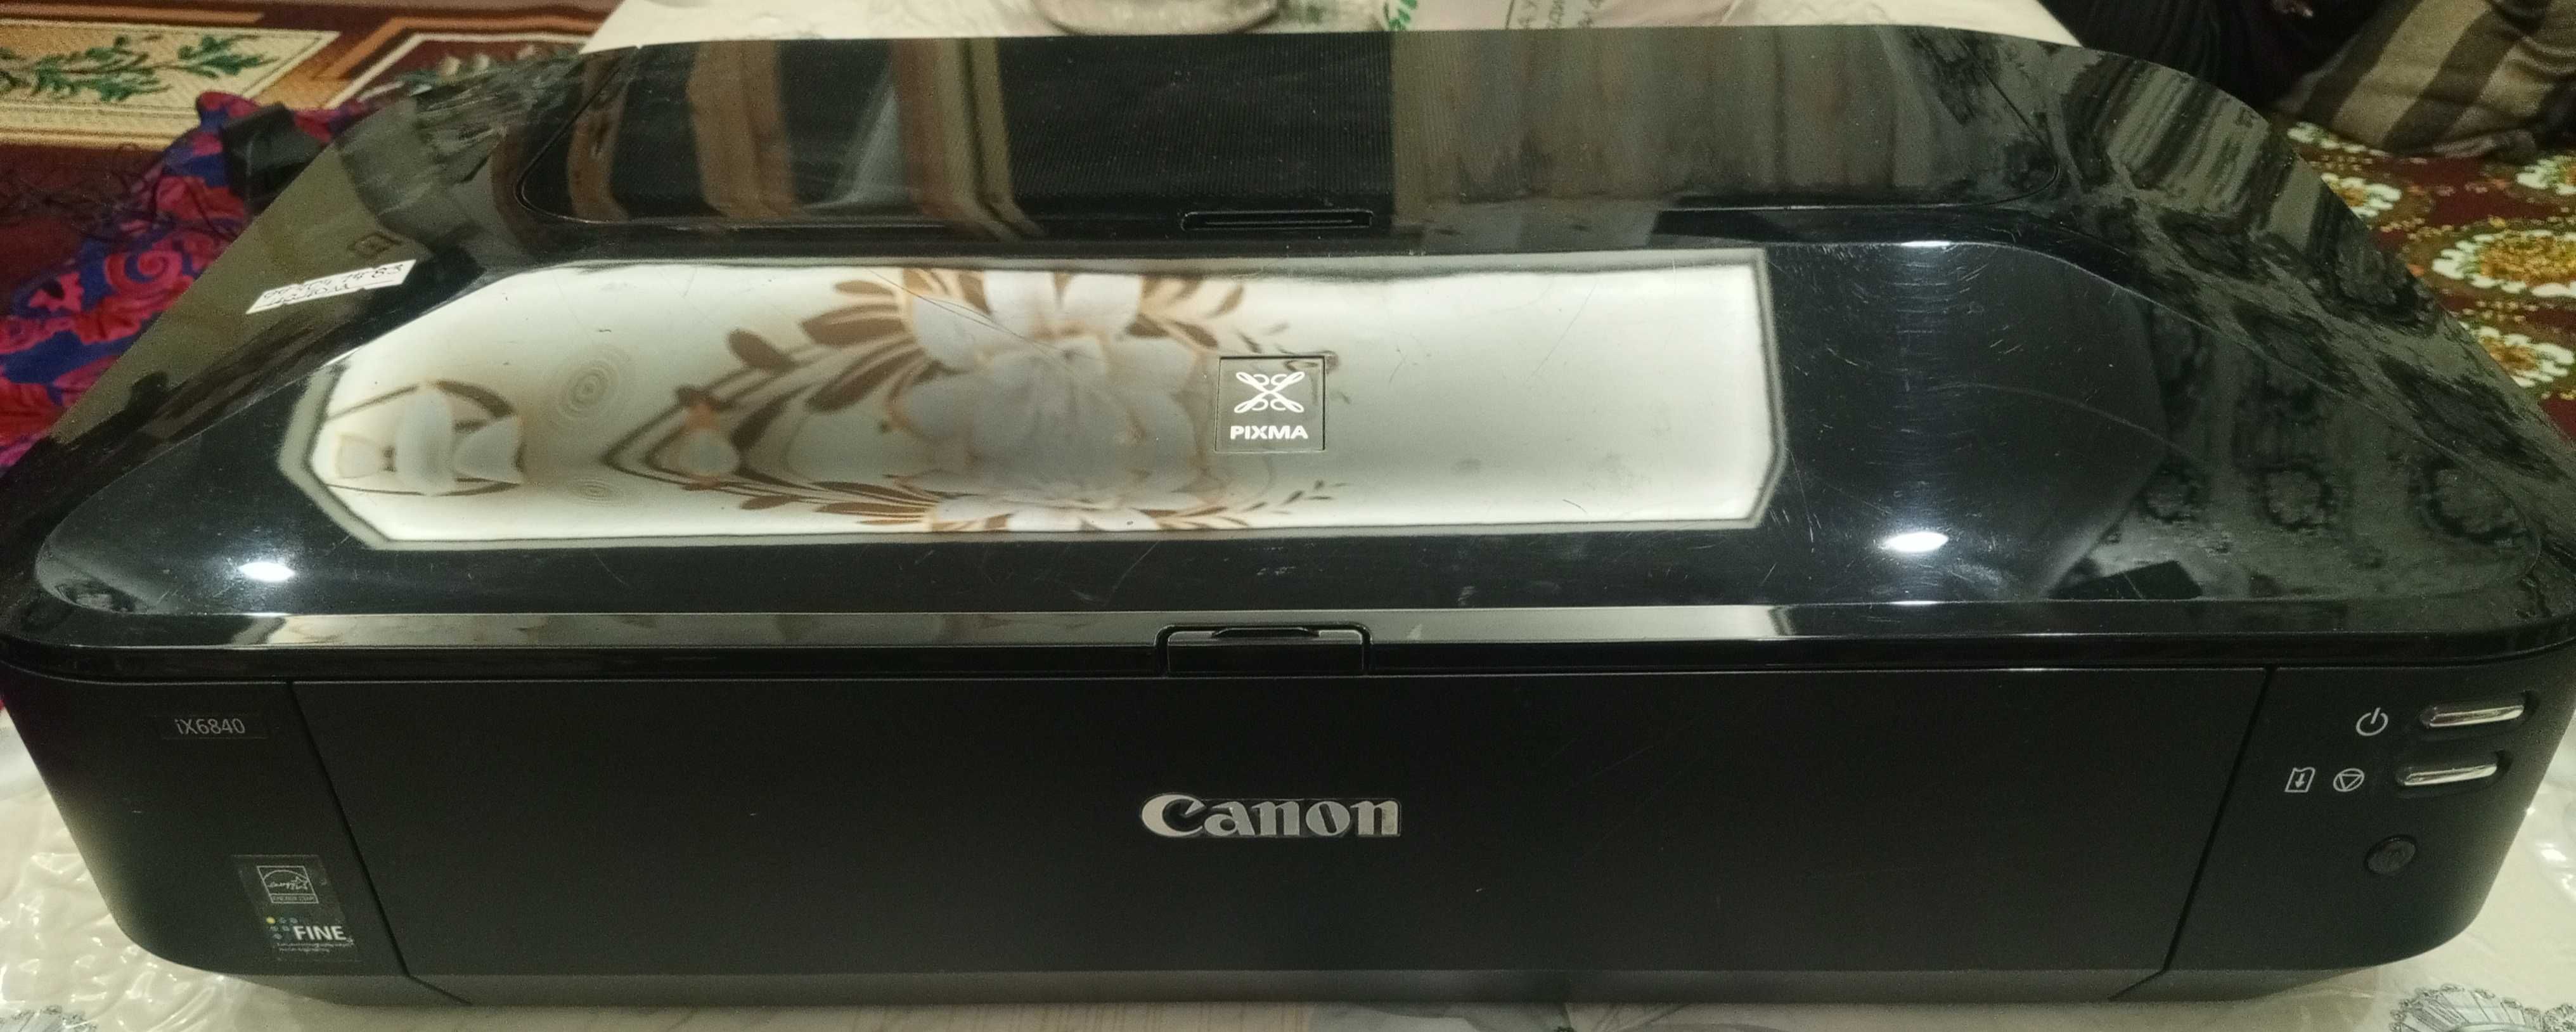 Принтер CANON IX6840